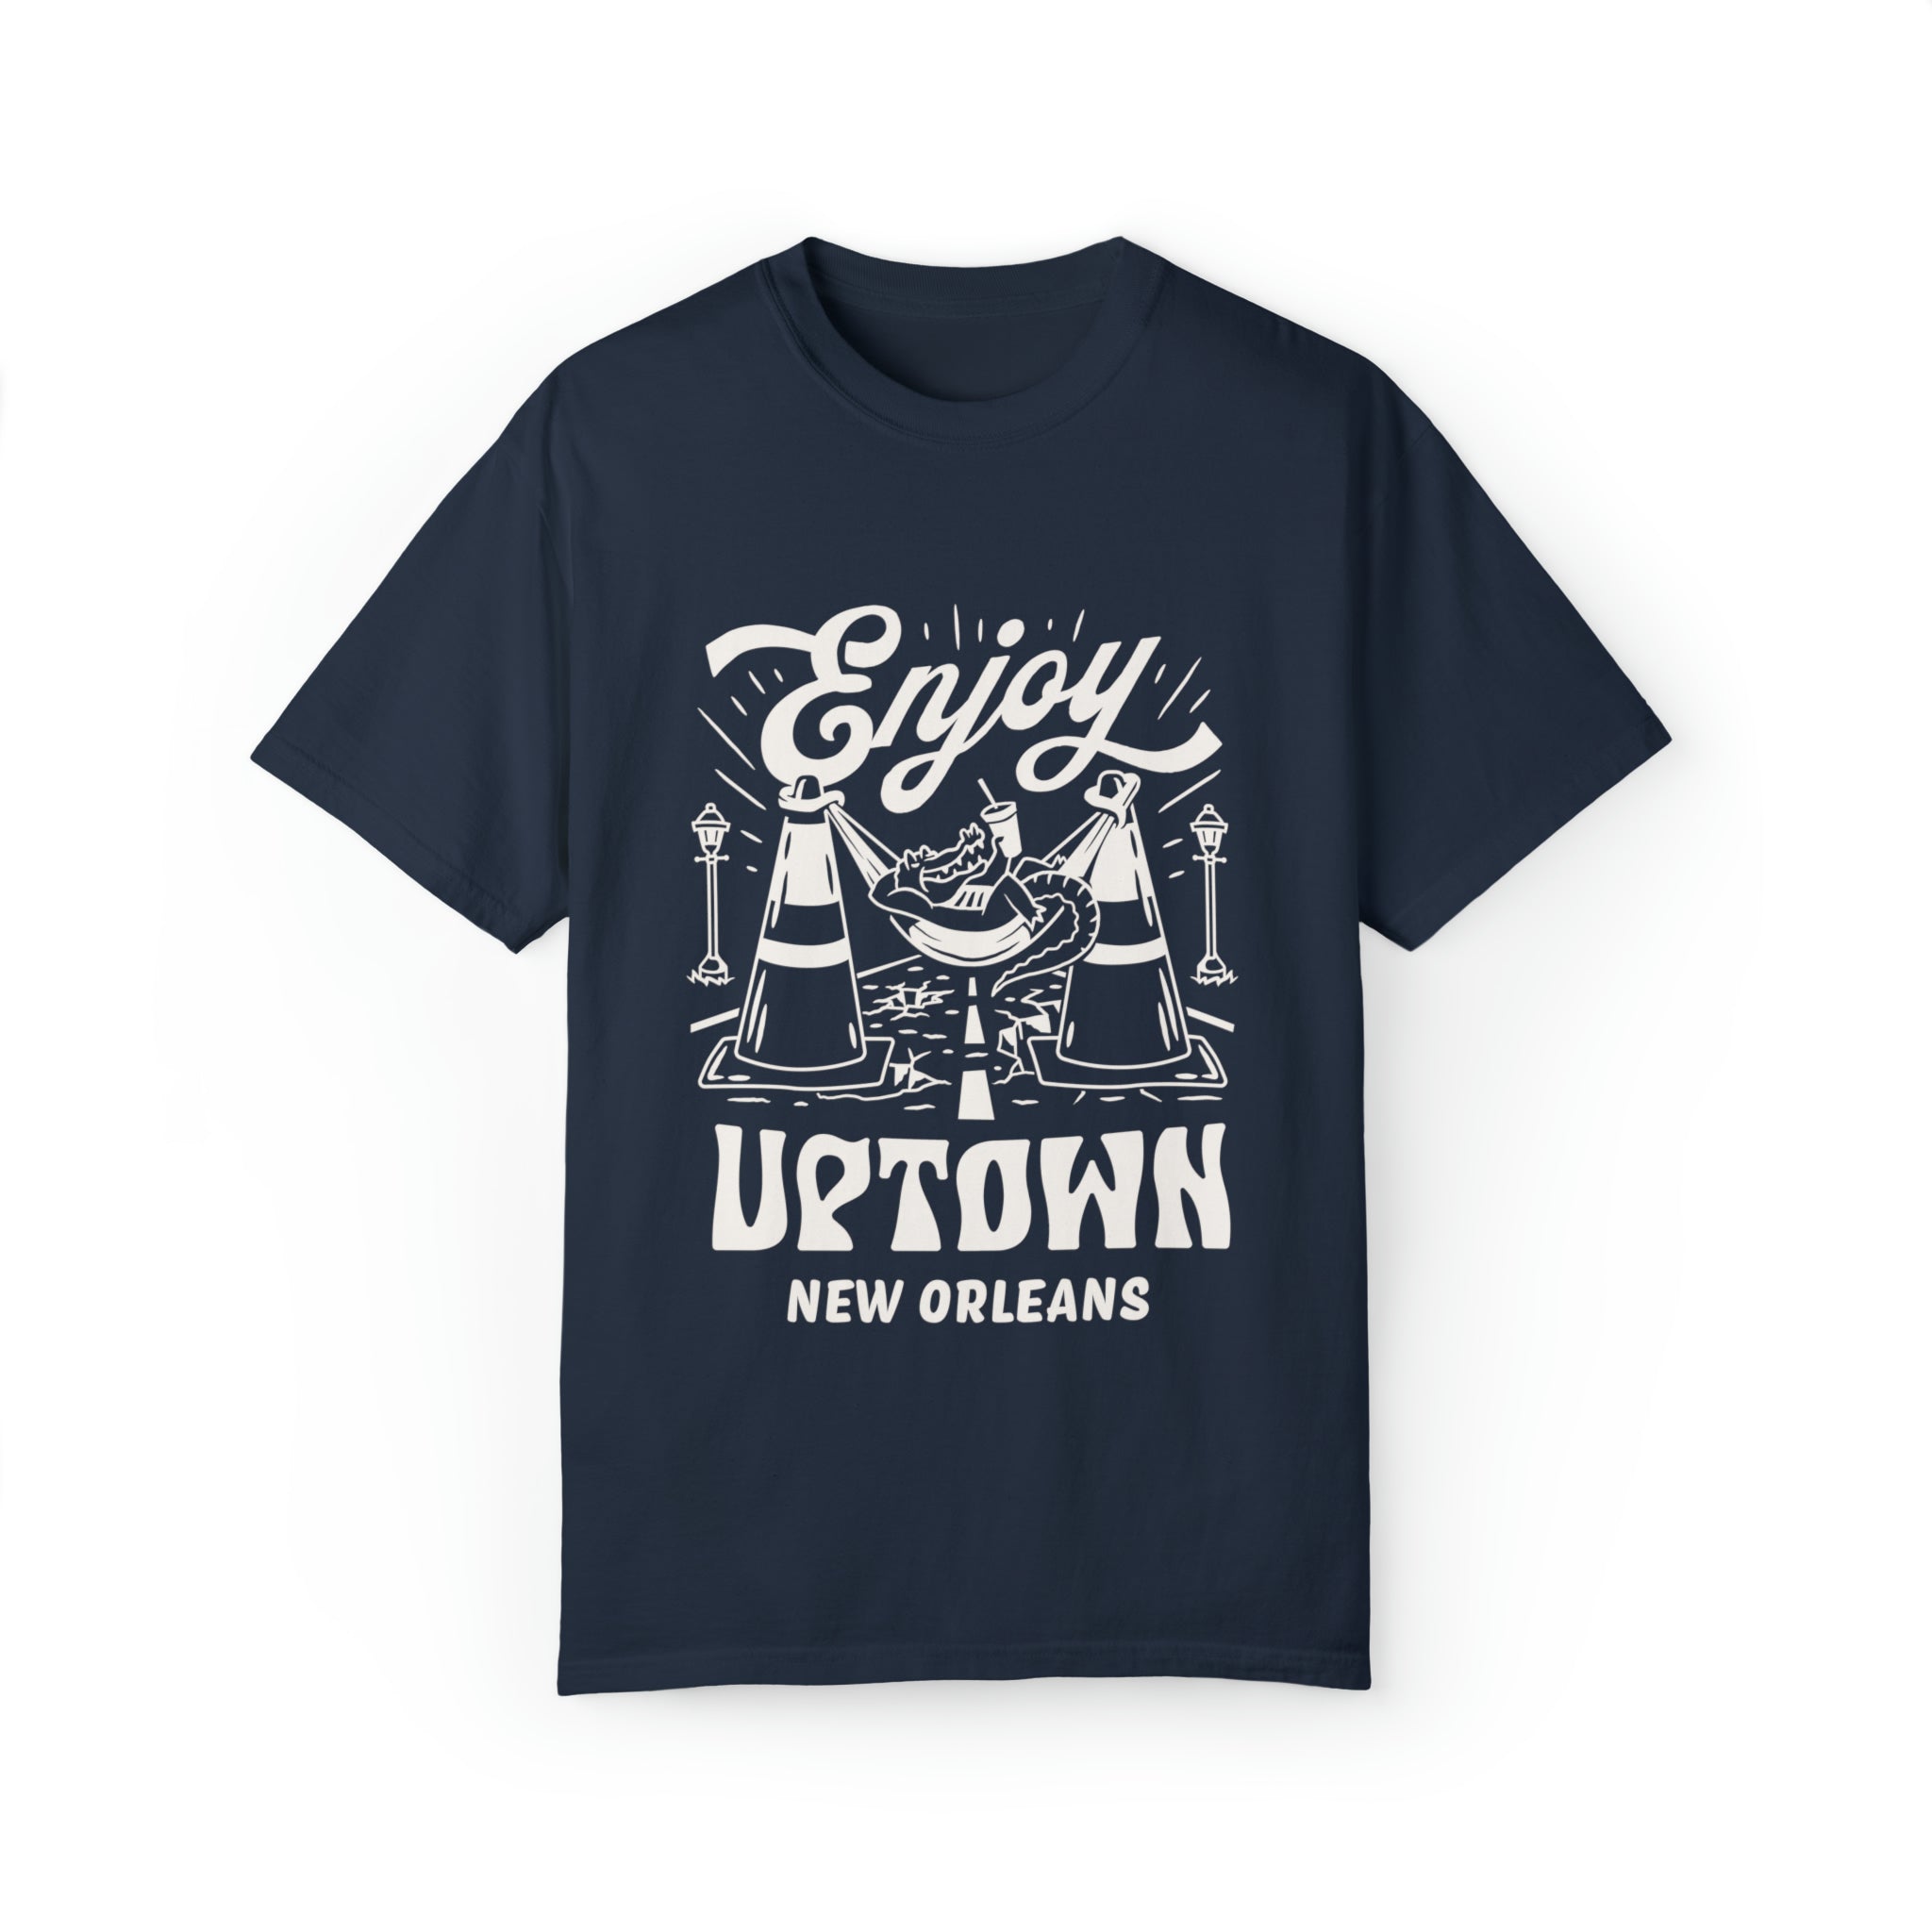 Enjoy Uptown (2018)